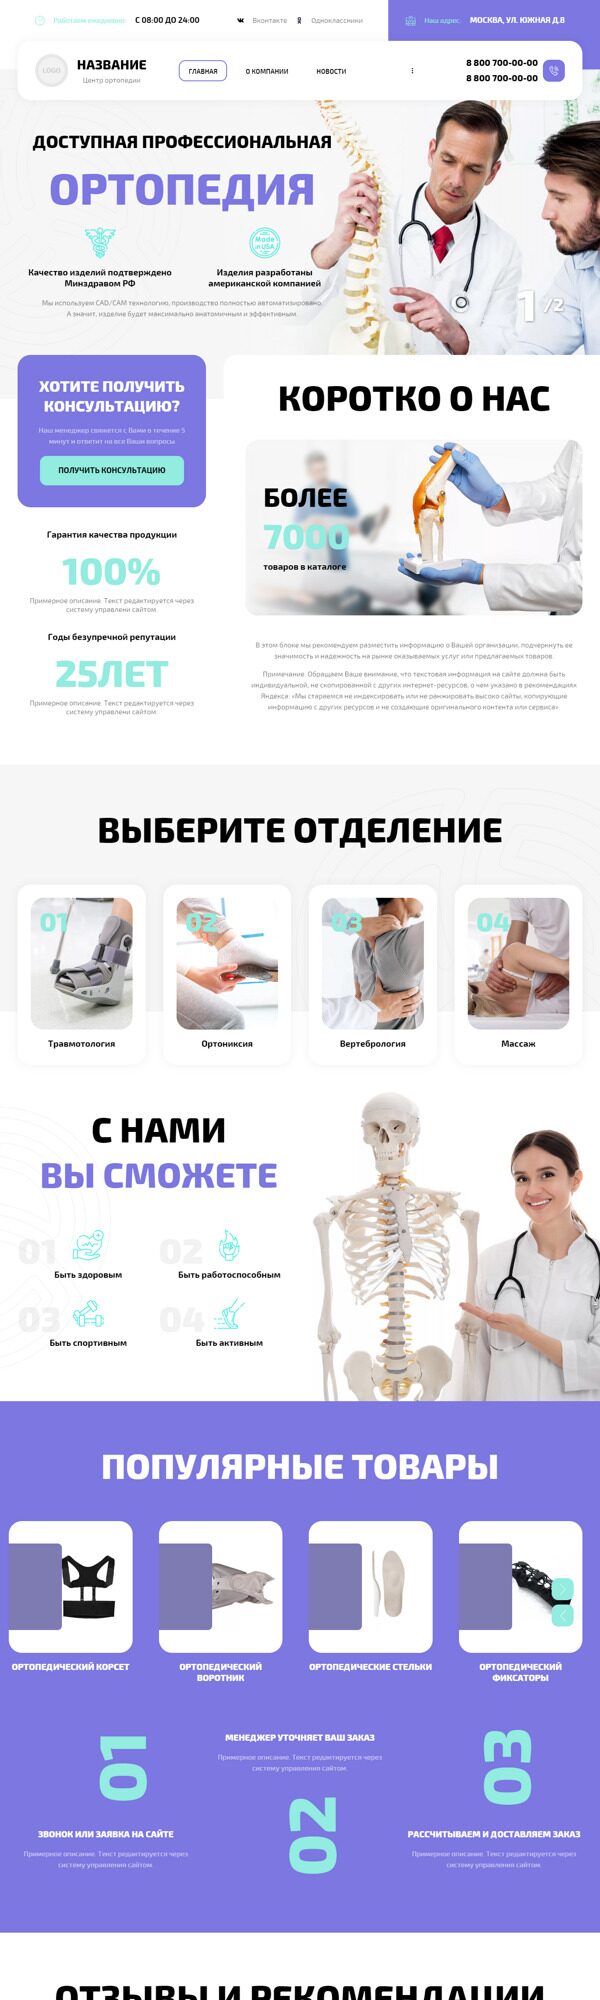 Готовый Сайт-Бизнес № 4712529 - Центр ортопедии и подологии (Десктопная версия)